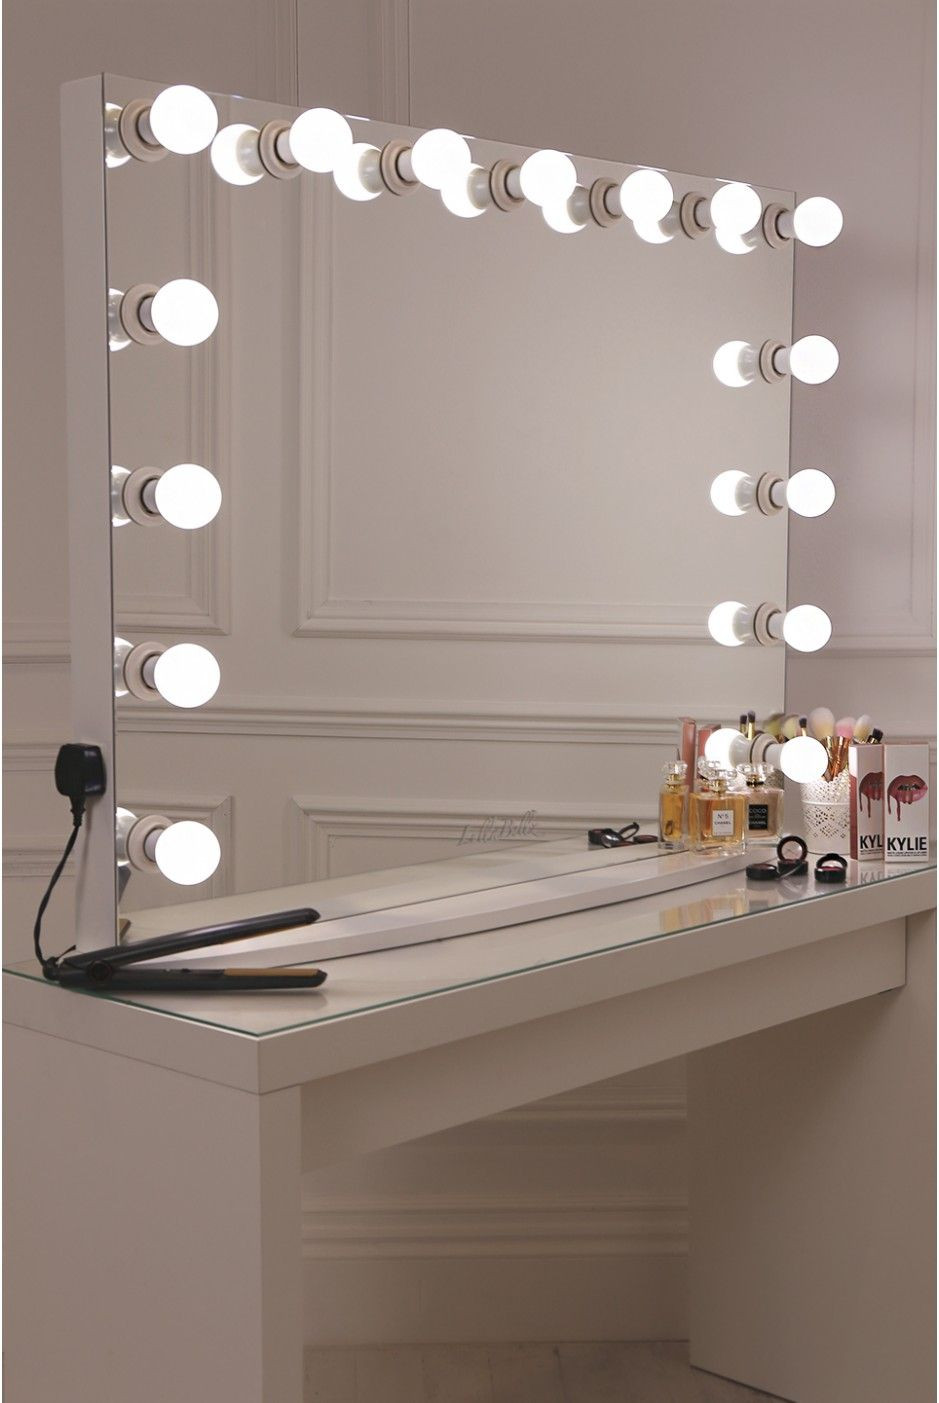 Hollywood Vanity Mirror DIY
 17 DIY Vanity Mirror Ideas to Make Your Room More